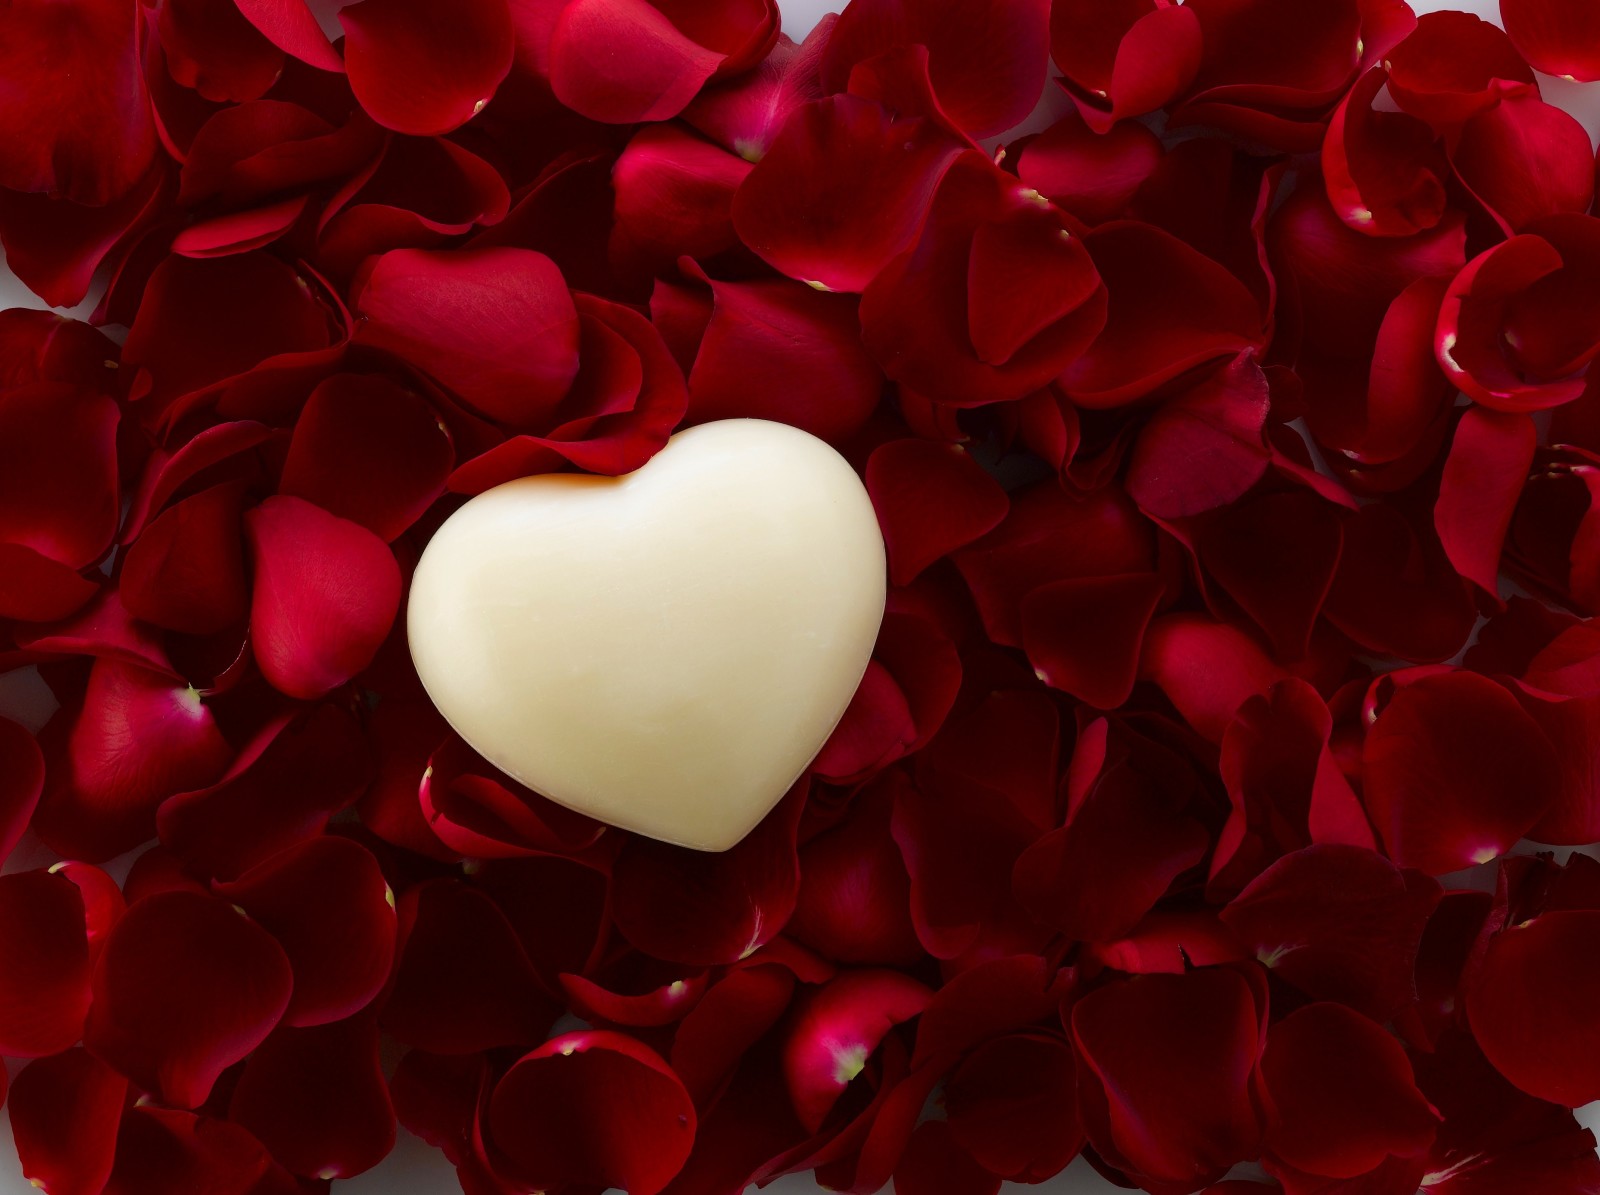 yêu và quý, lãng mạn, ngày lễ tình nhân, hoa hồng, tim, cánh hoa